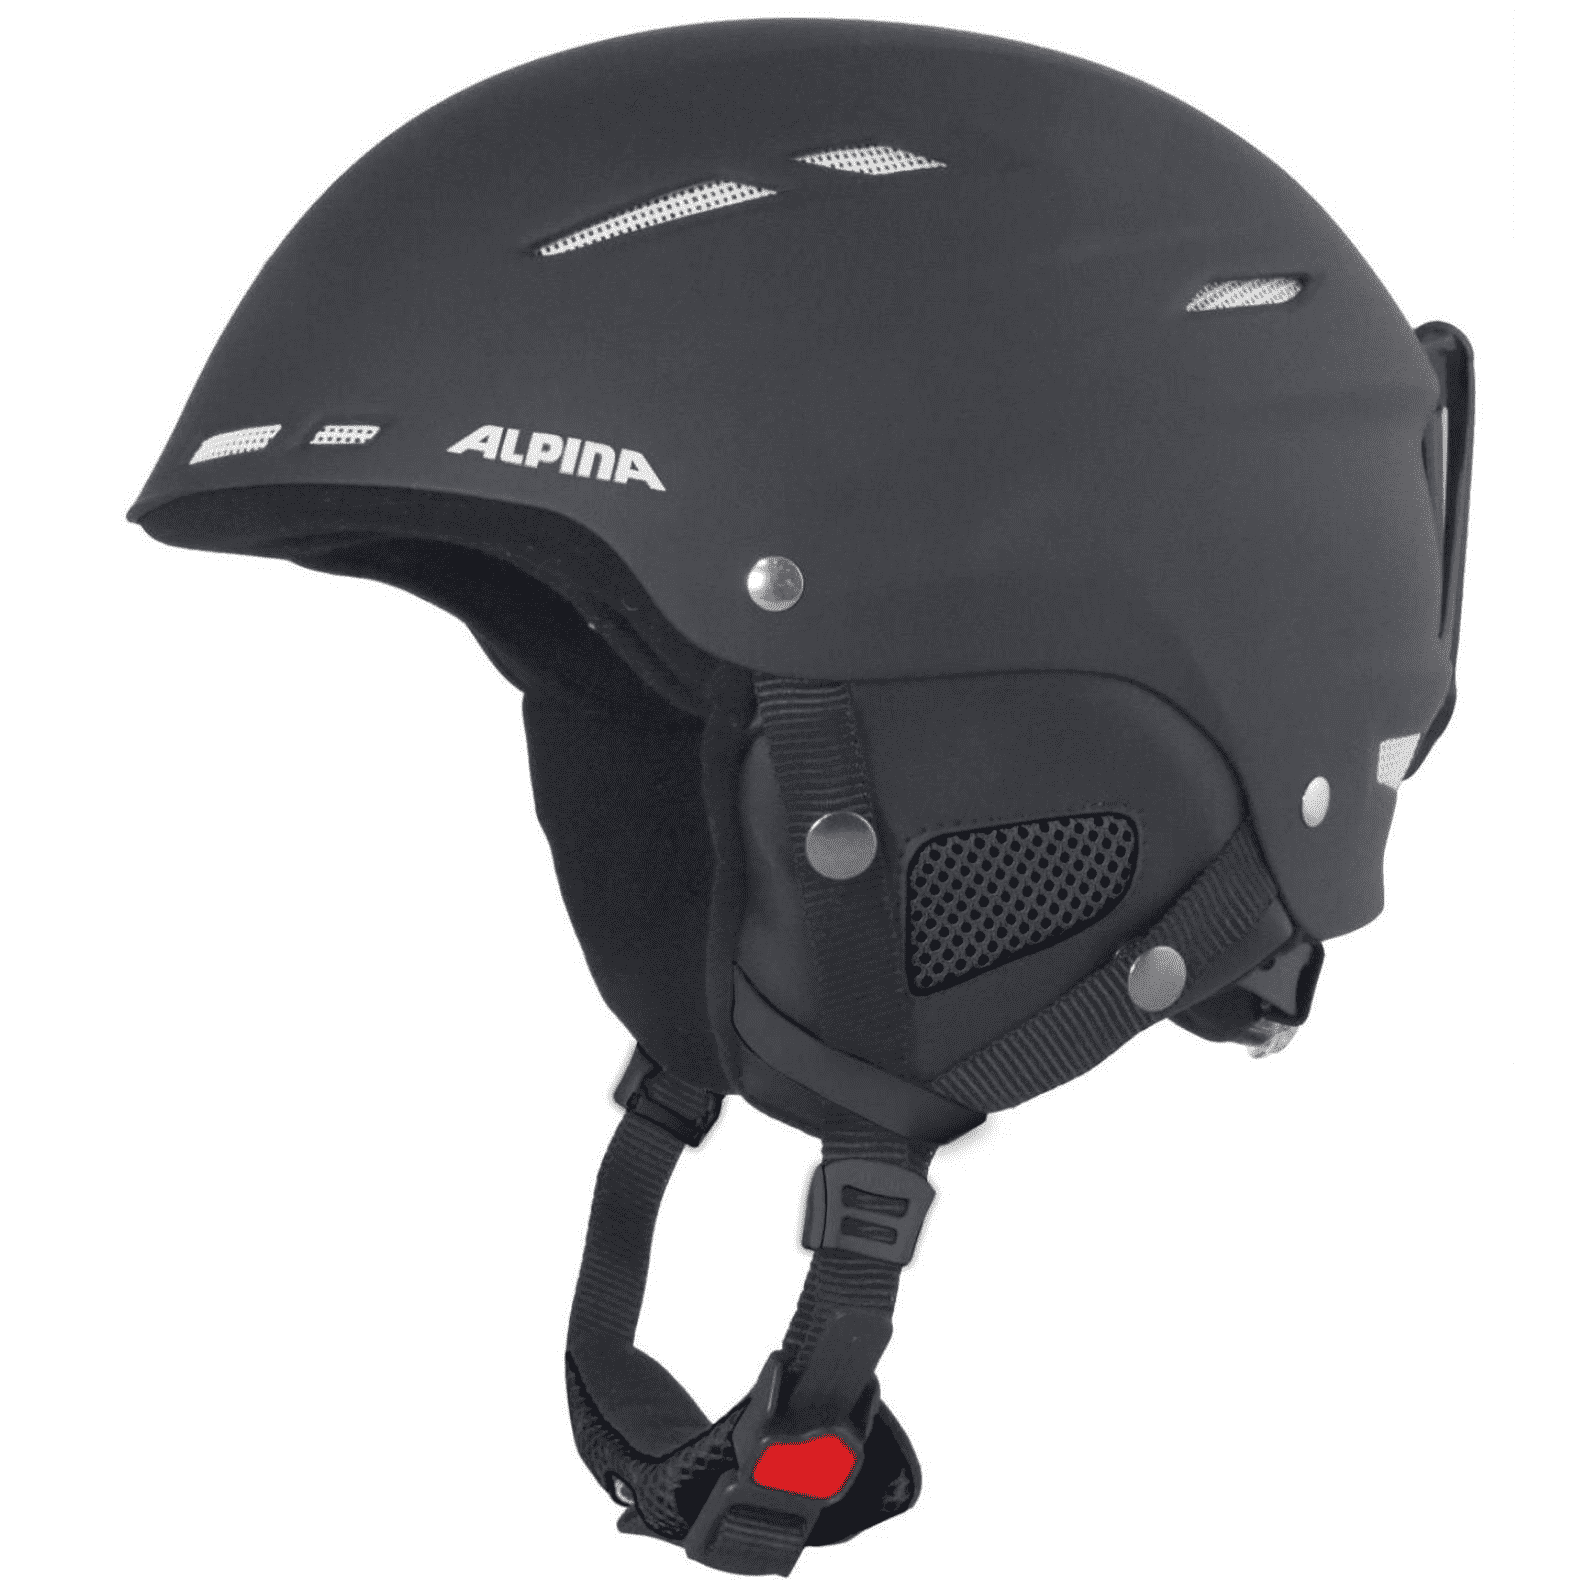 Купить горнолыжный шлем в москве. Шлем Alpina Biom. Шлем Alpina Alto v (Black Matt) 23. Шлем Alpina 2020-21 Biom c. Шлем Alpina Biom 2019.